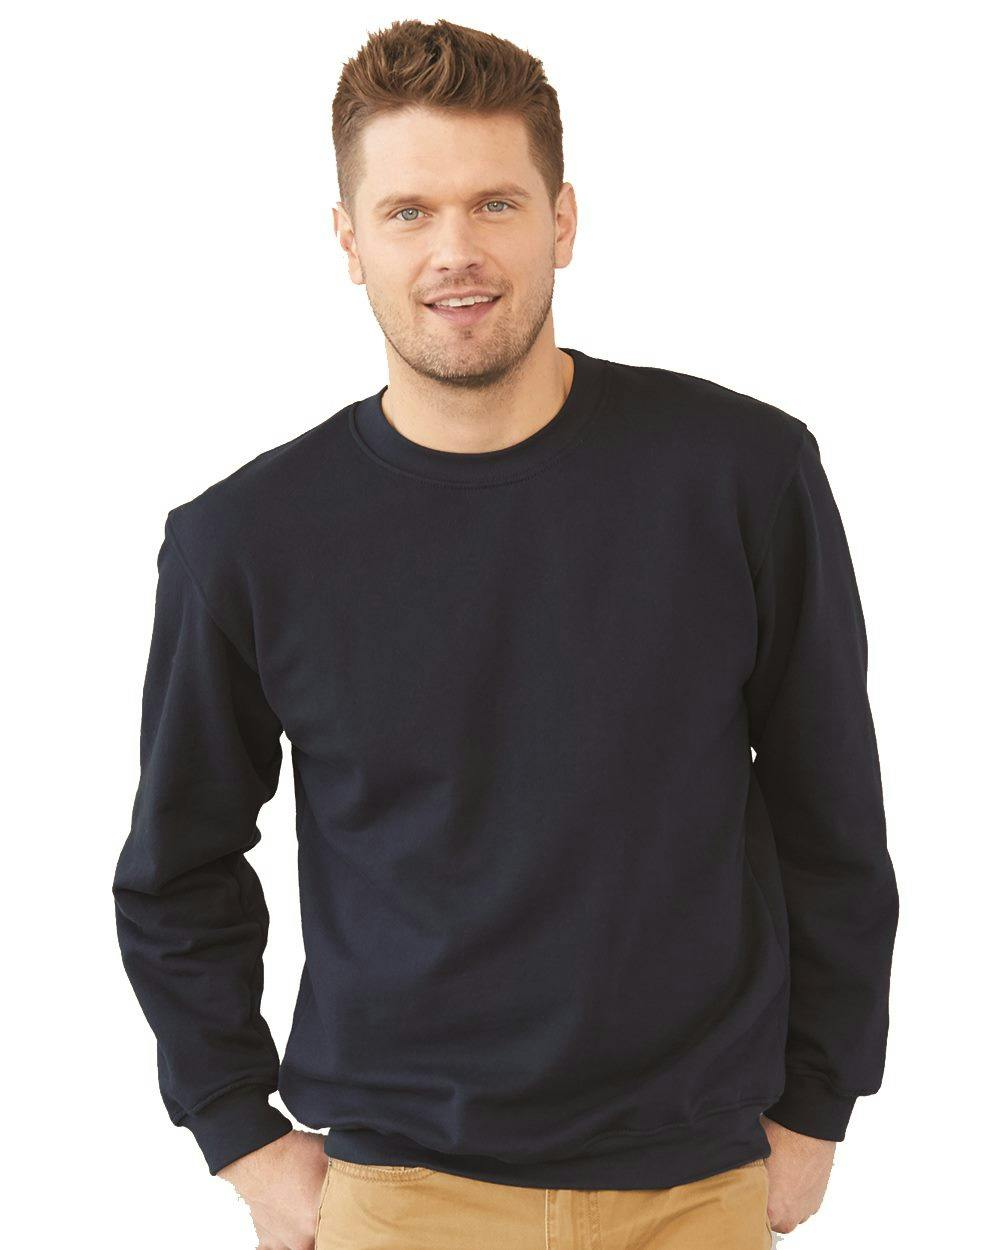 Image for USA-Made Crewneck Sweatshirt - 1102